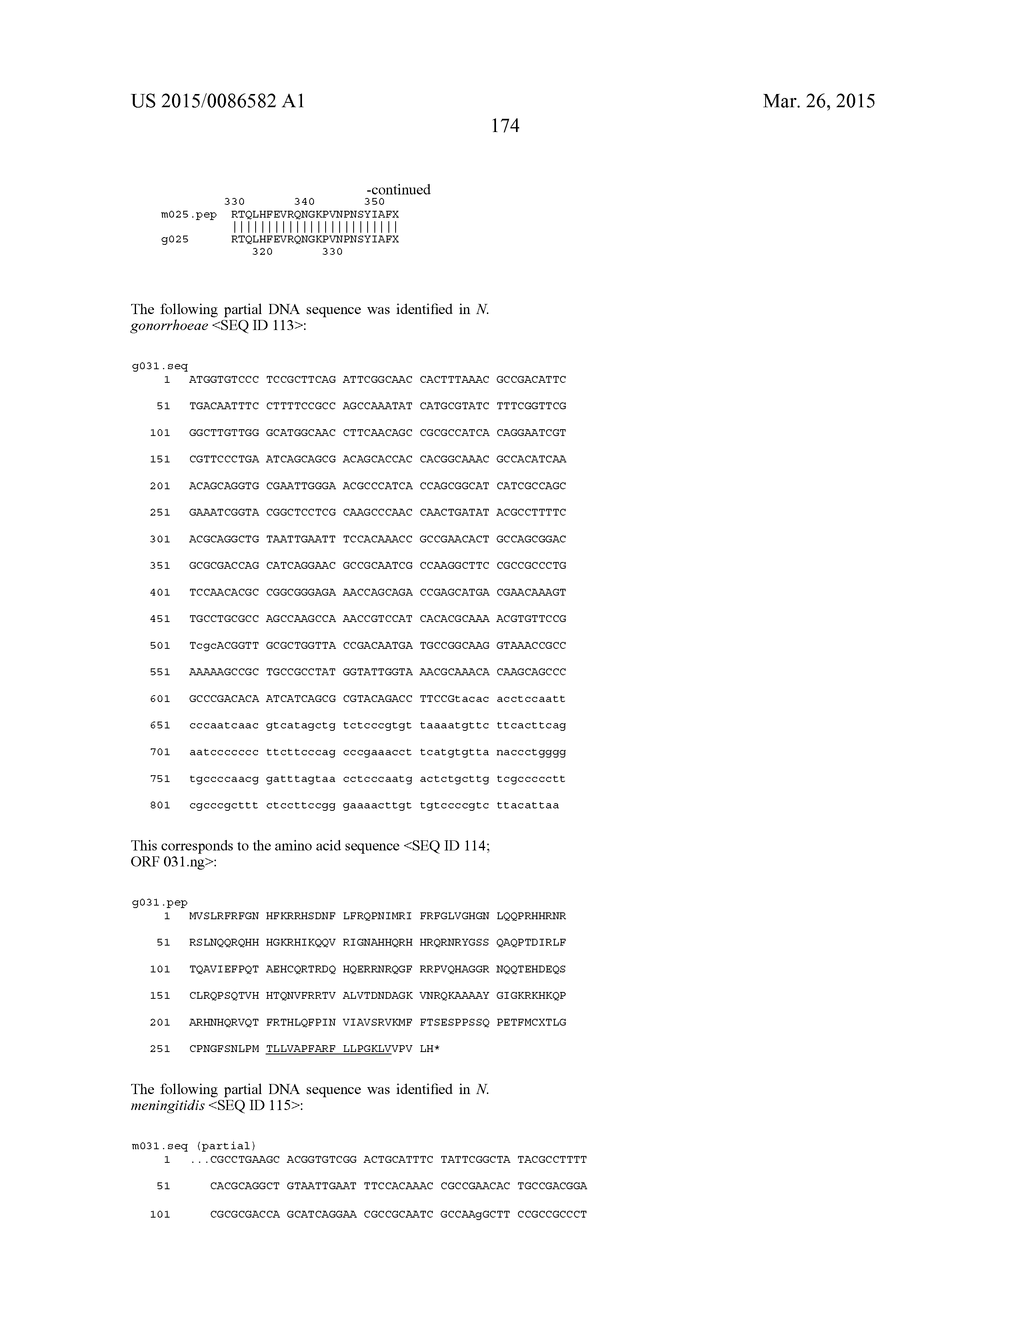 NEISSERIA MENINGITIDIS ANTIGENS AND COMPOSITIONS - diagram, schematic, and image 206